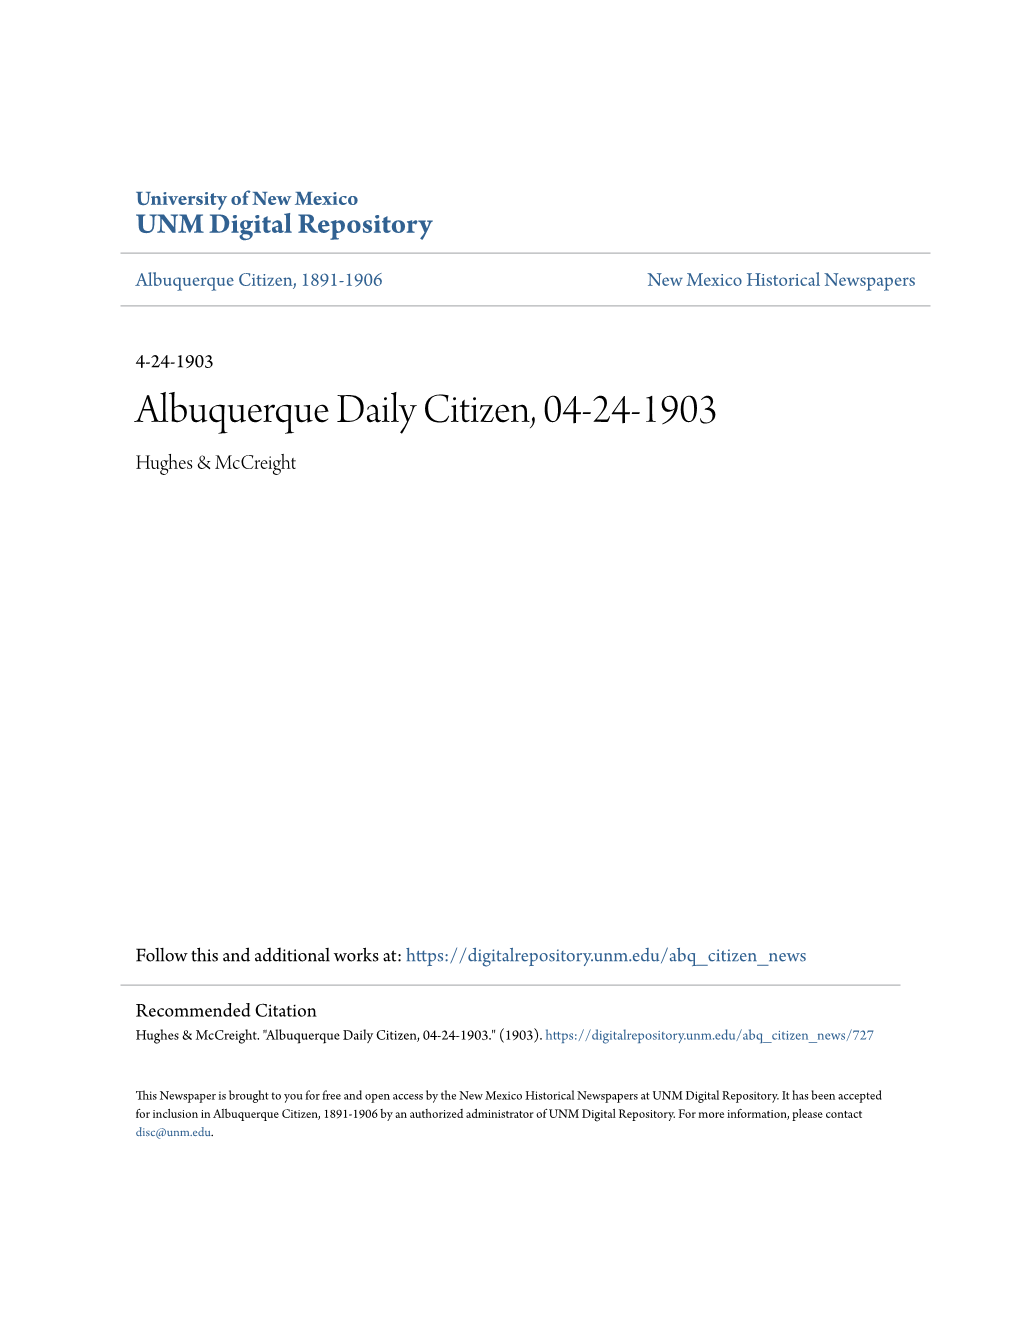 Albuquerque Daily Citizen, 04-24-1903 Hughes & Mccreight